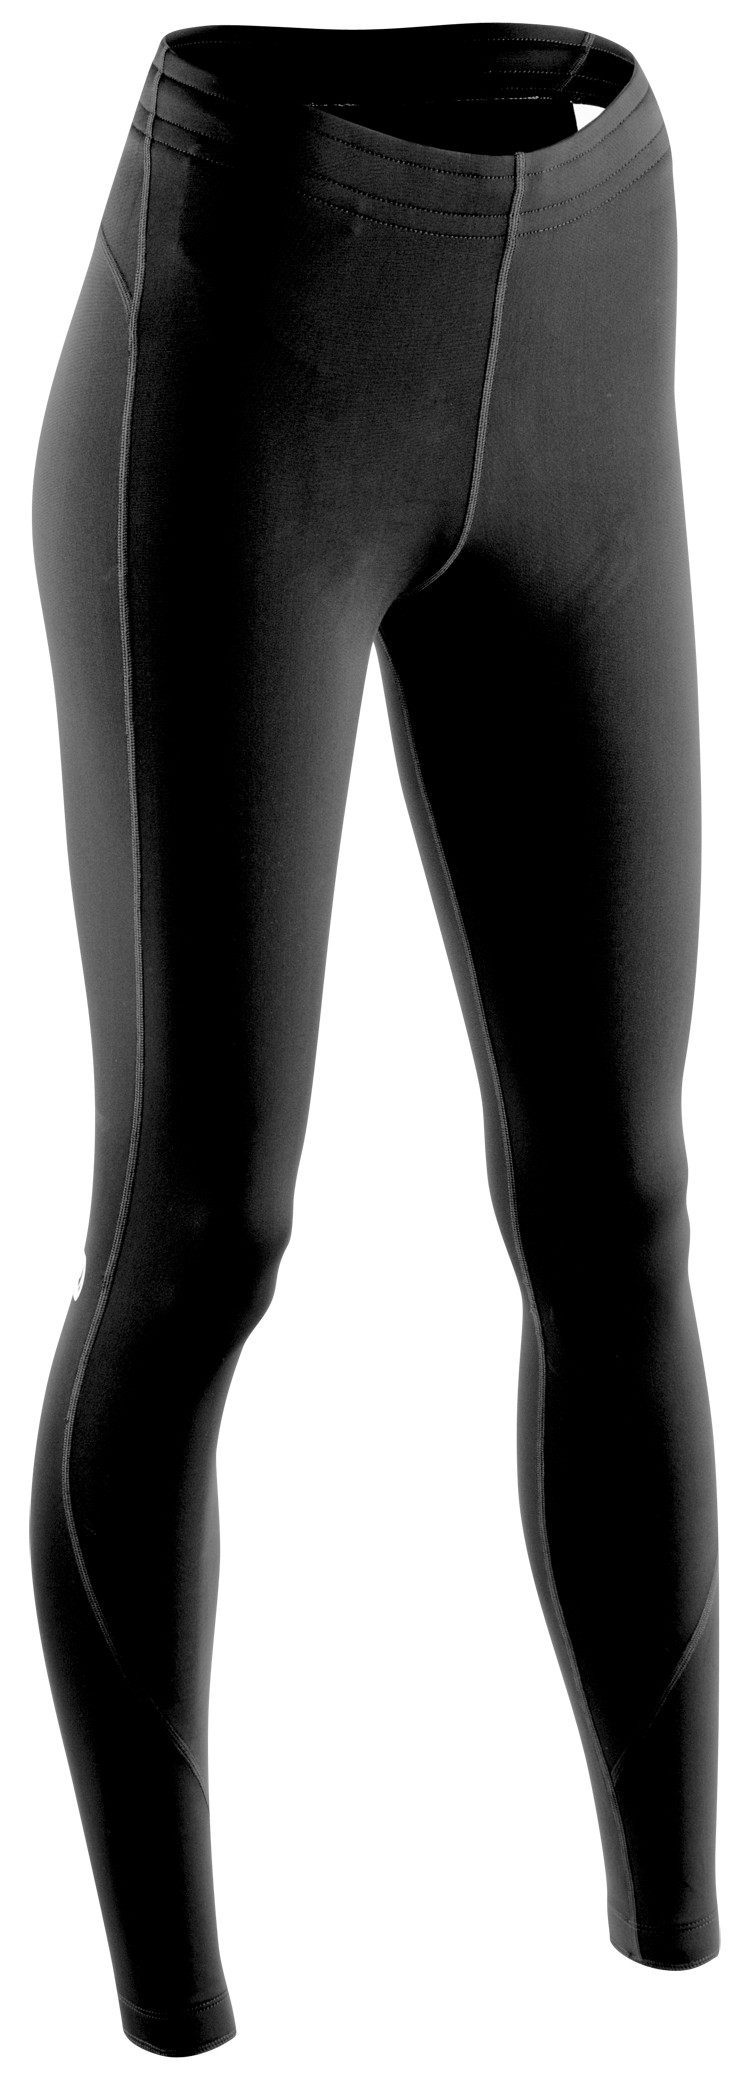 Рейтузи Sugoi Linear MIDZERO TIGHT, жіночі, gunmetal/black (сіро-чорні), S фото 